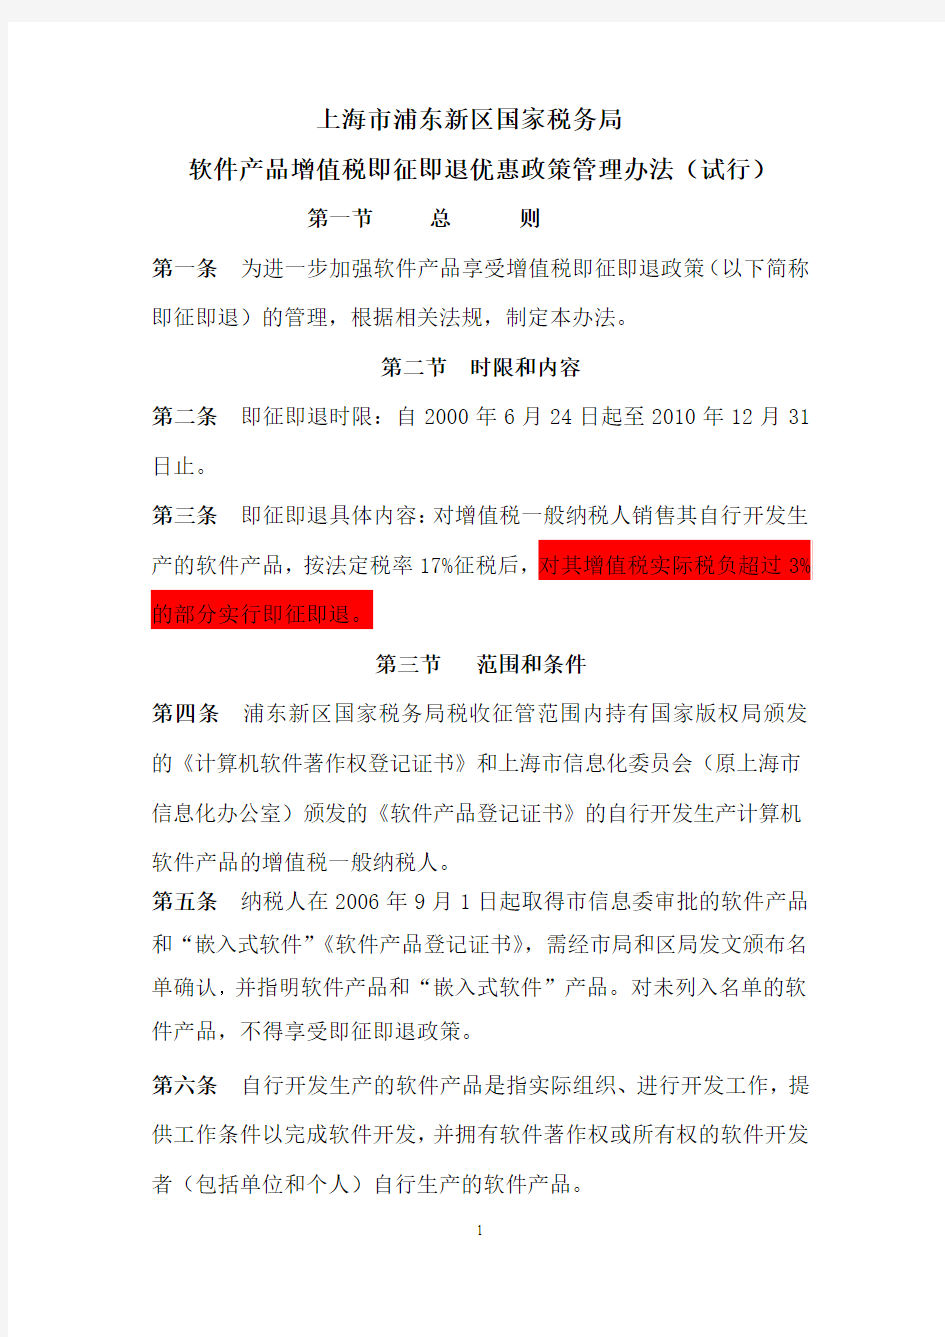 上海市浦东新区国家税务局软件产品增值税即征即退管理办法正式定稿-1